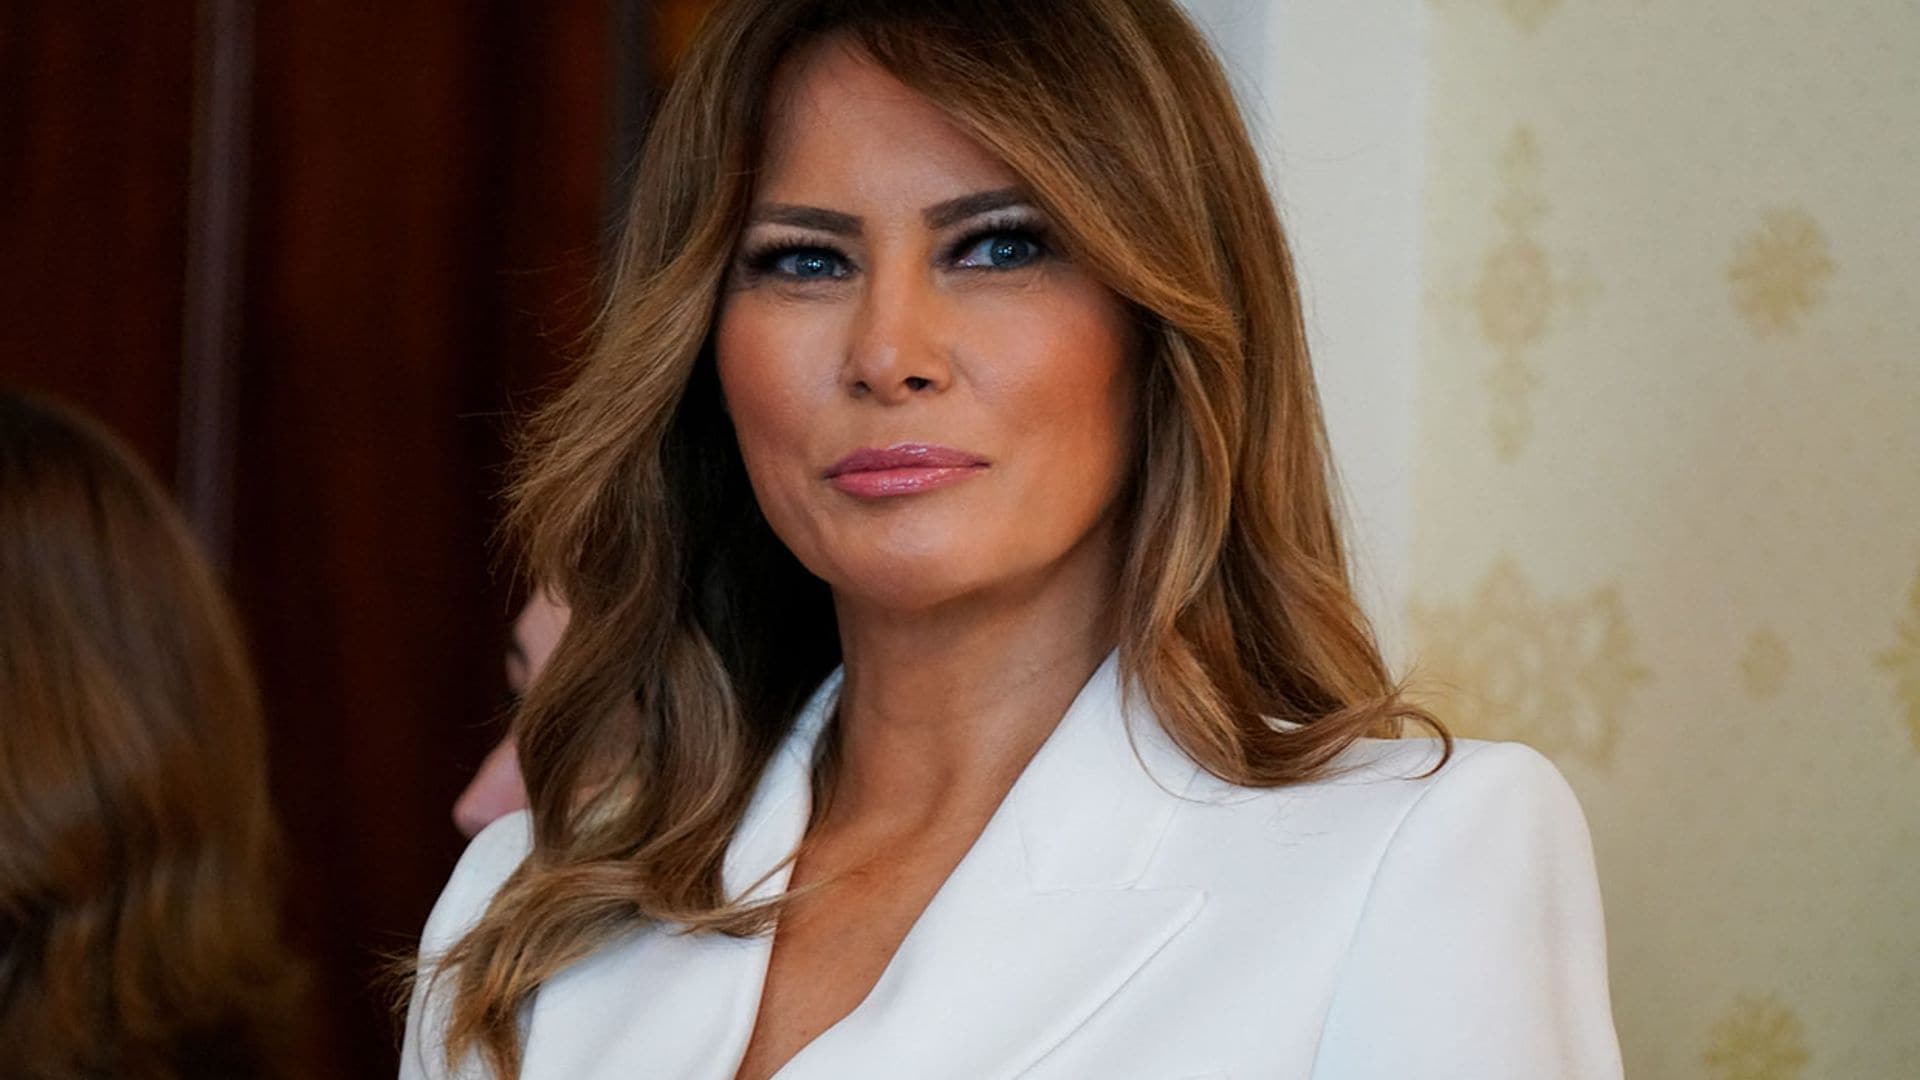 Dos años después, Melania Trump actualiza su traje blanco con efecto 'fit'